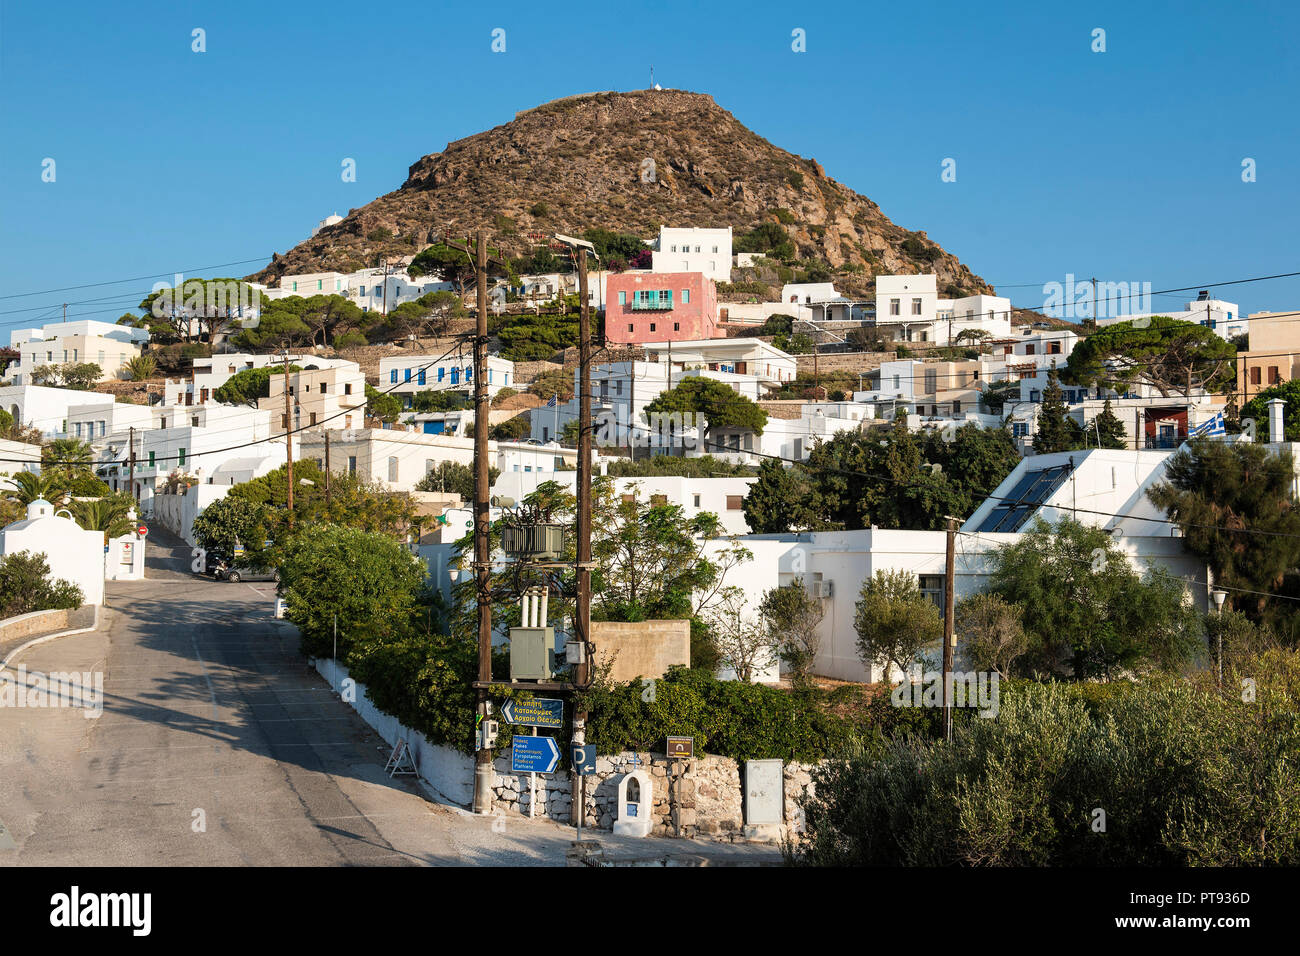 Plaka, die Hauptstadt von Milos, Kykladen, Griechenland. Ein Panorama der wunderschönen Hügel von Plaka mit ihren weißen Häusern. Stockfoto